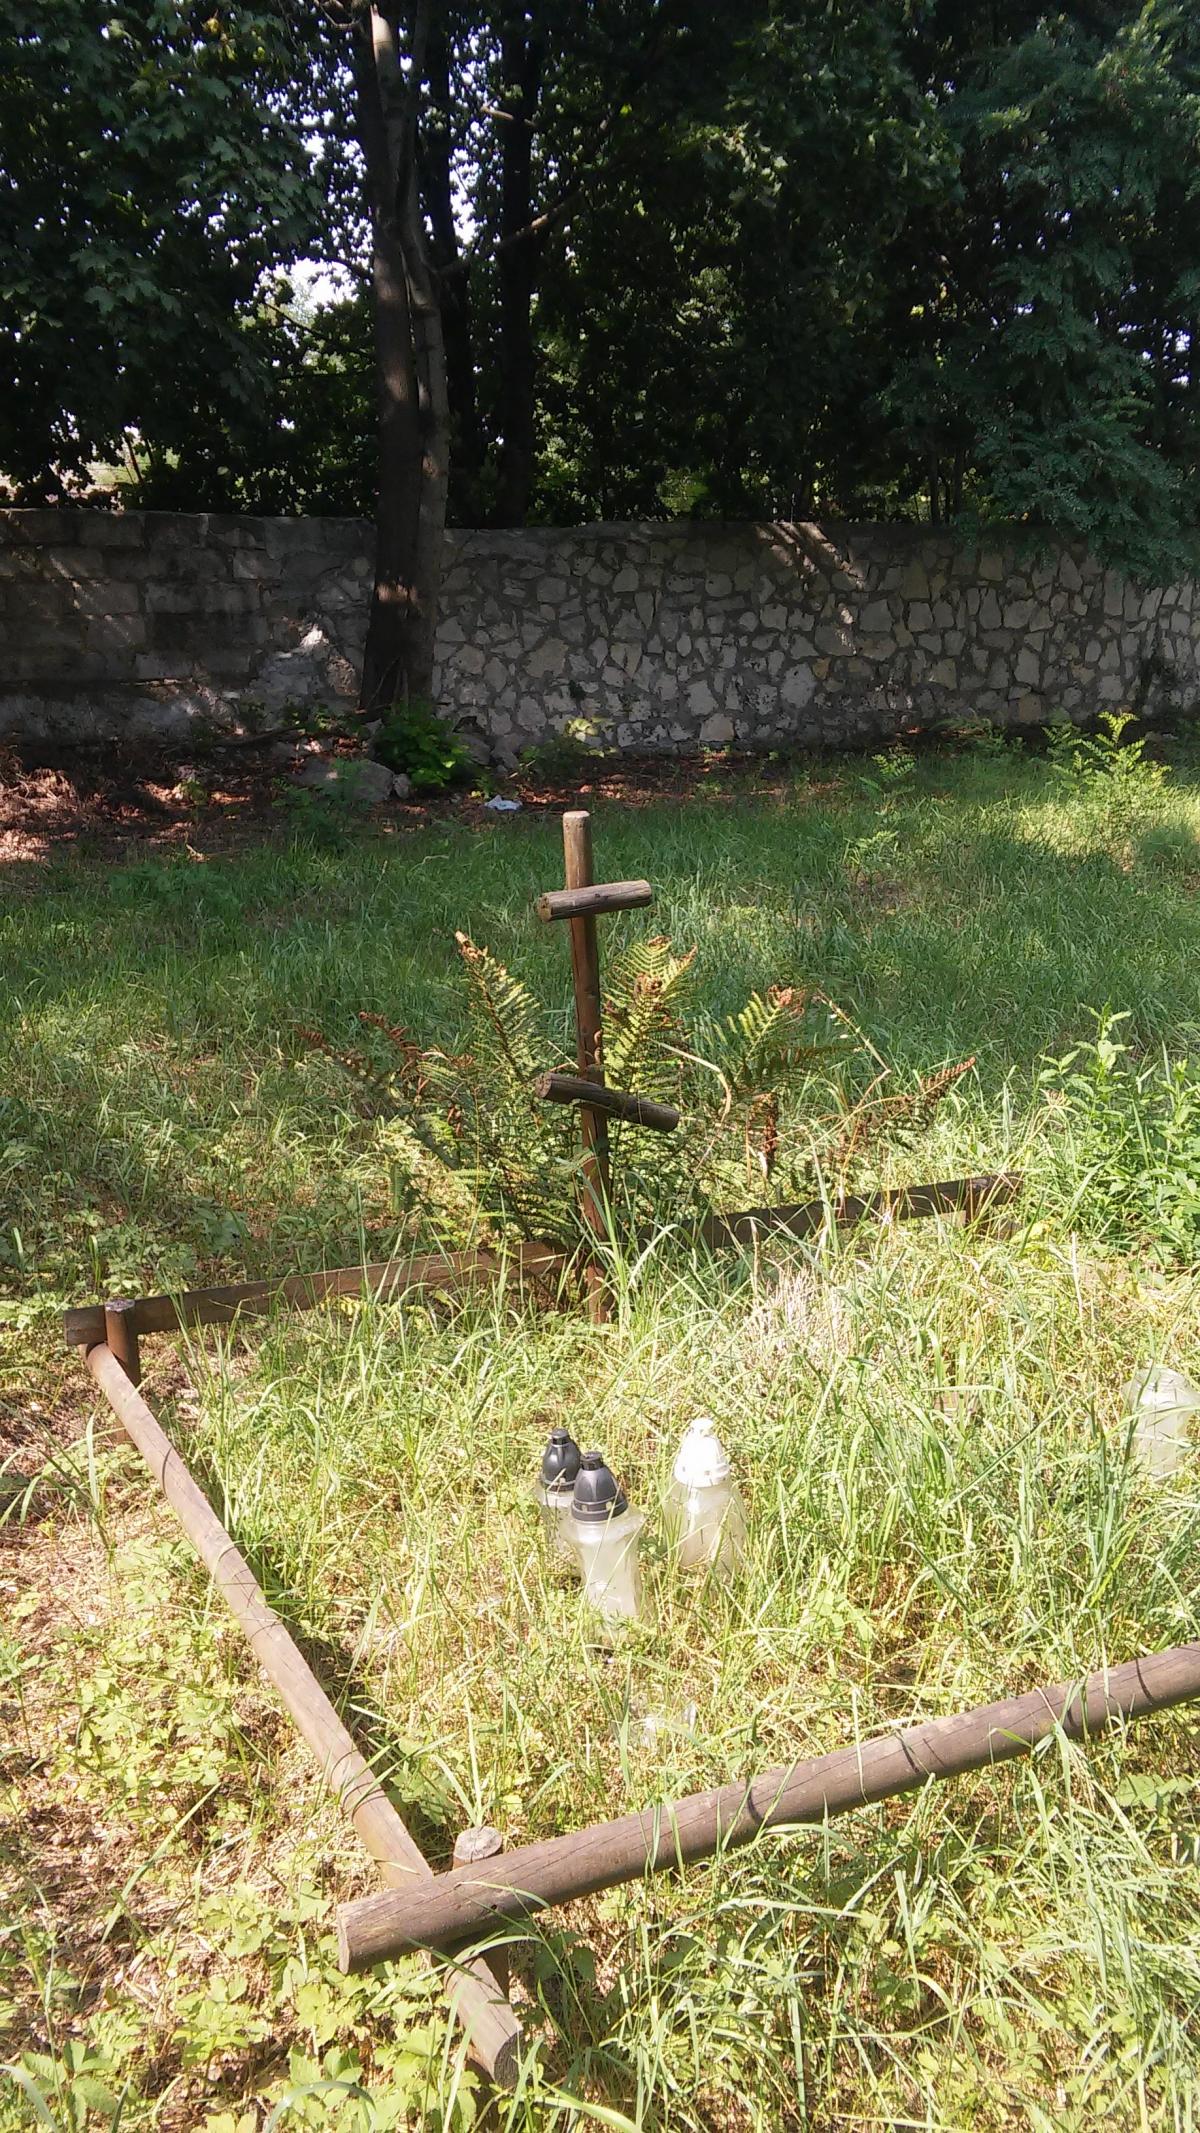 Wikipedia, Cemeteries in Silesian Voivodeship, Cemeteries in Sosnowiec, Orthodox cemetery in Sosnowi